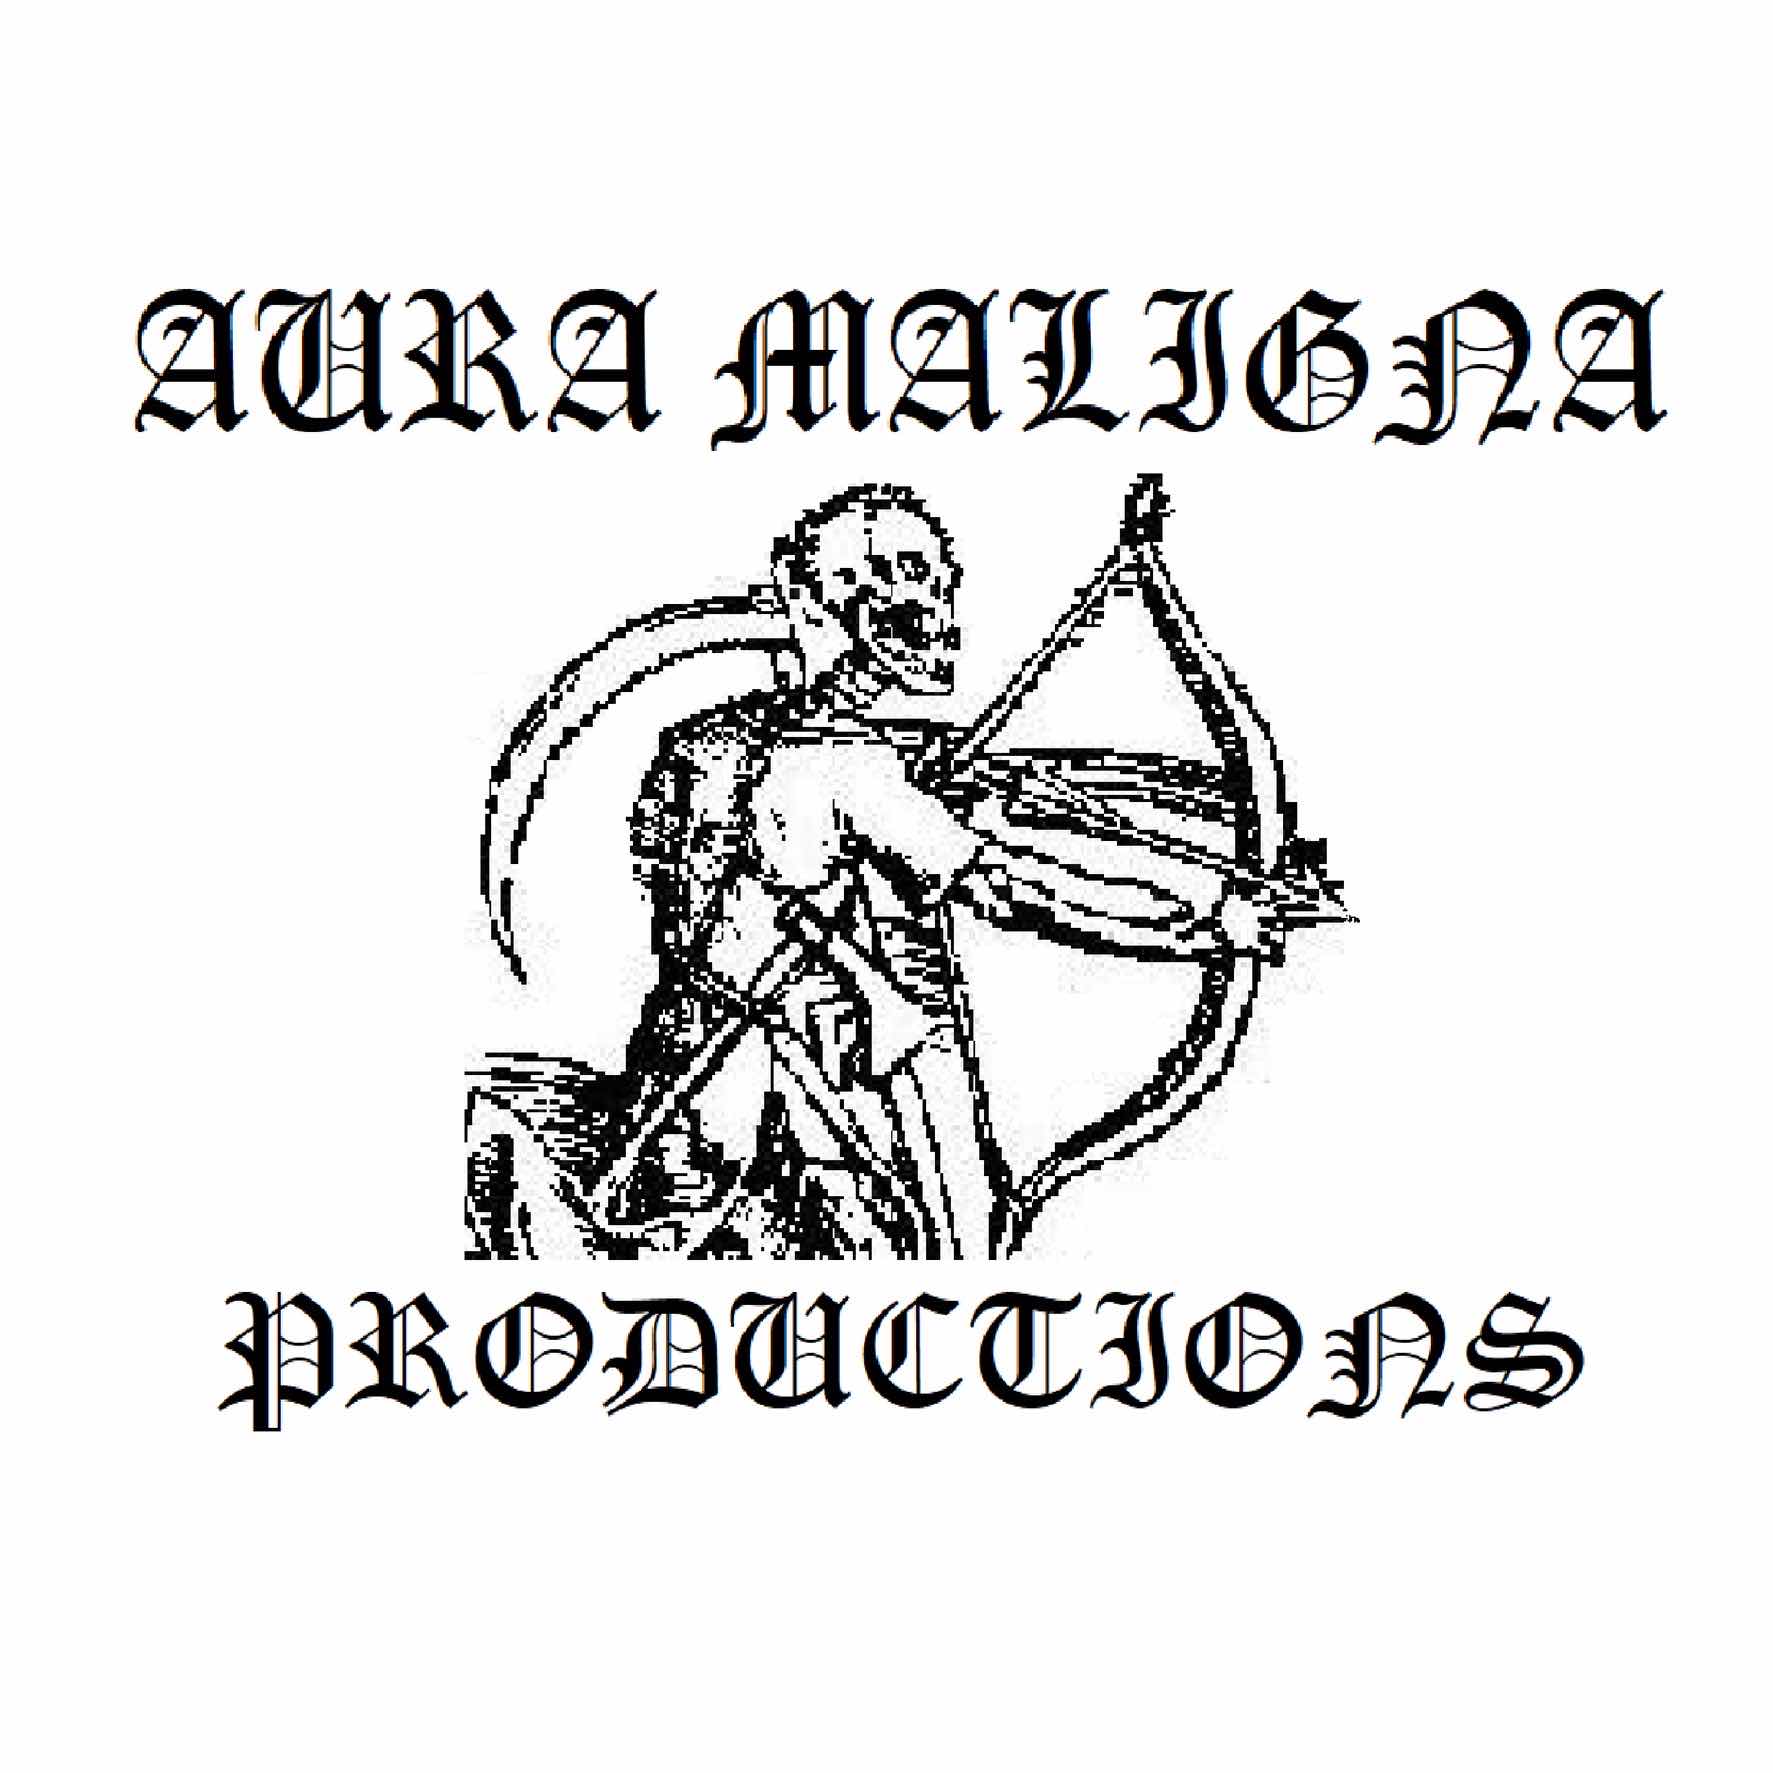 Aura Maligna